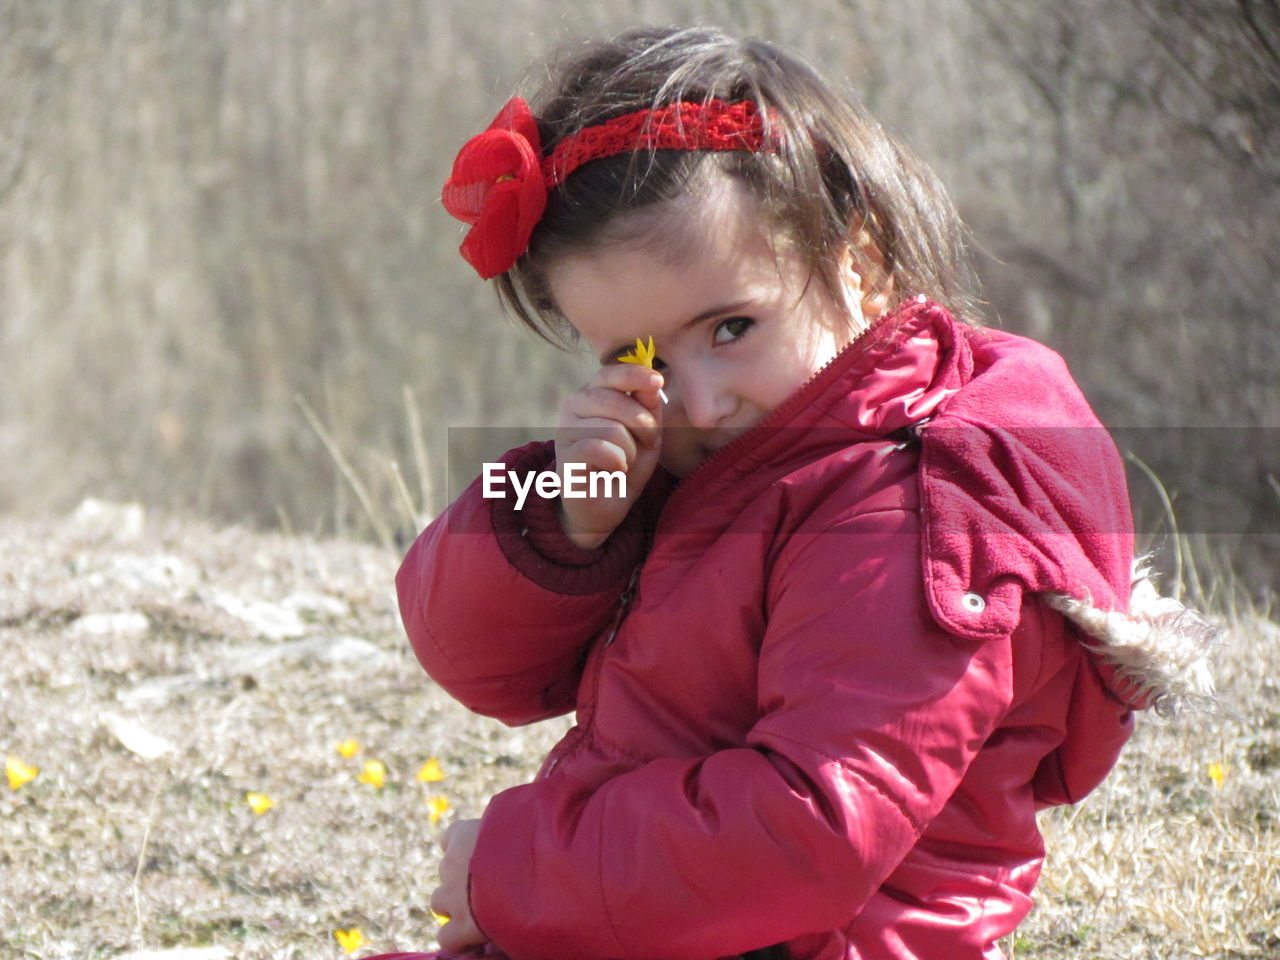 Portrait of girl showing flower on field